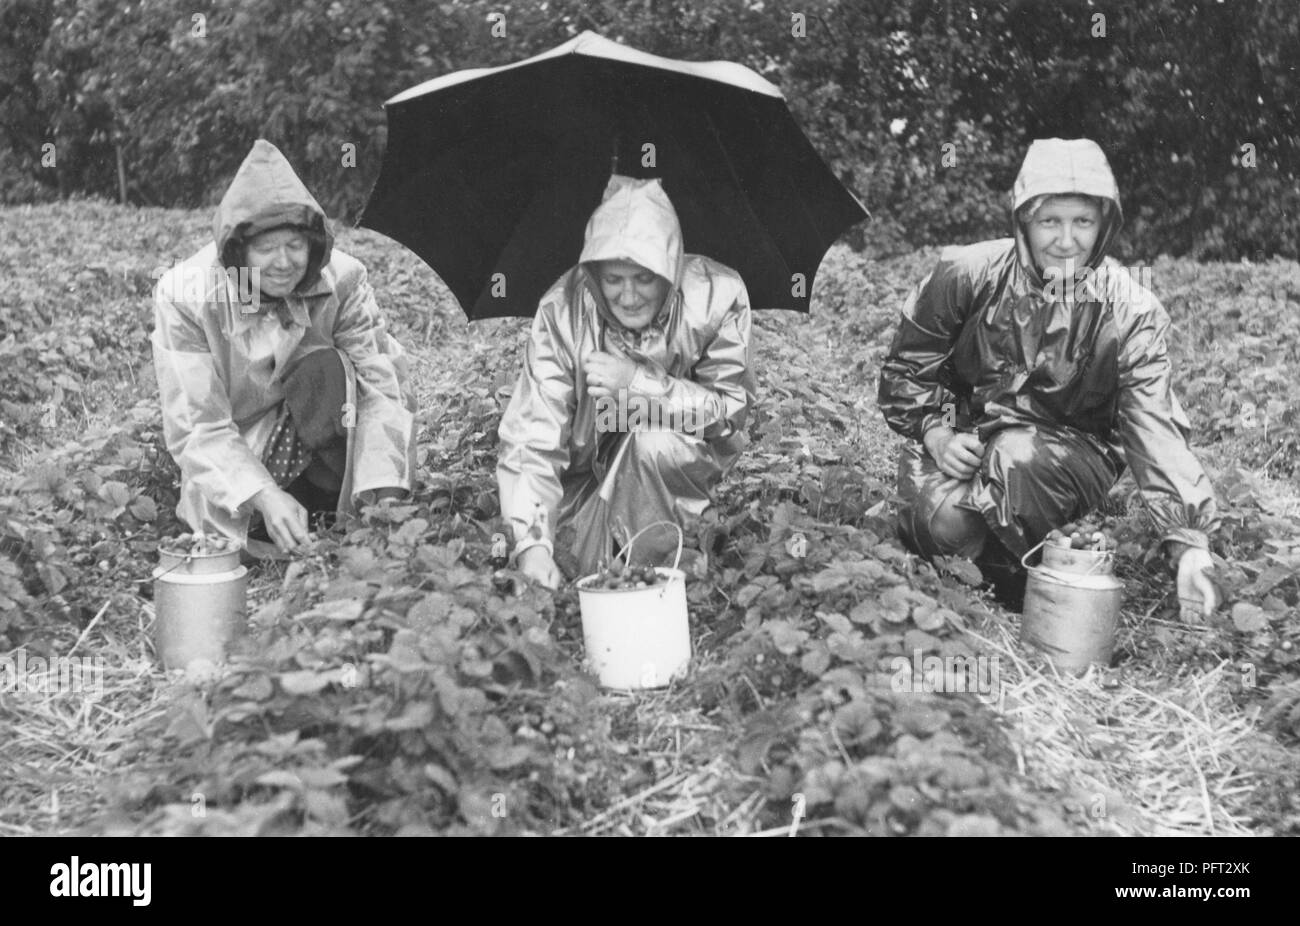 1950 jour de pluie. Trois personnes sont la cueillette des fraises dans la pluie. Suède 1950 Banque D'Images